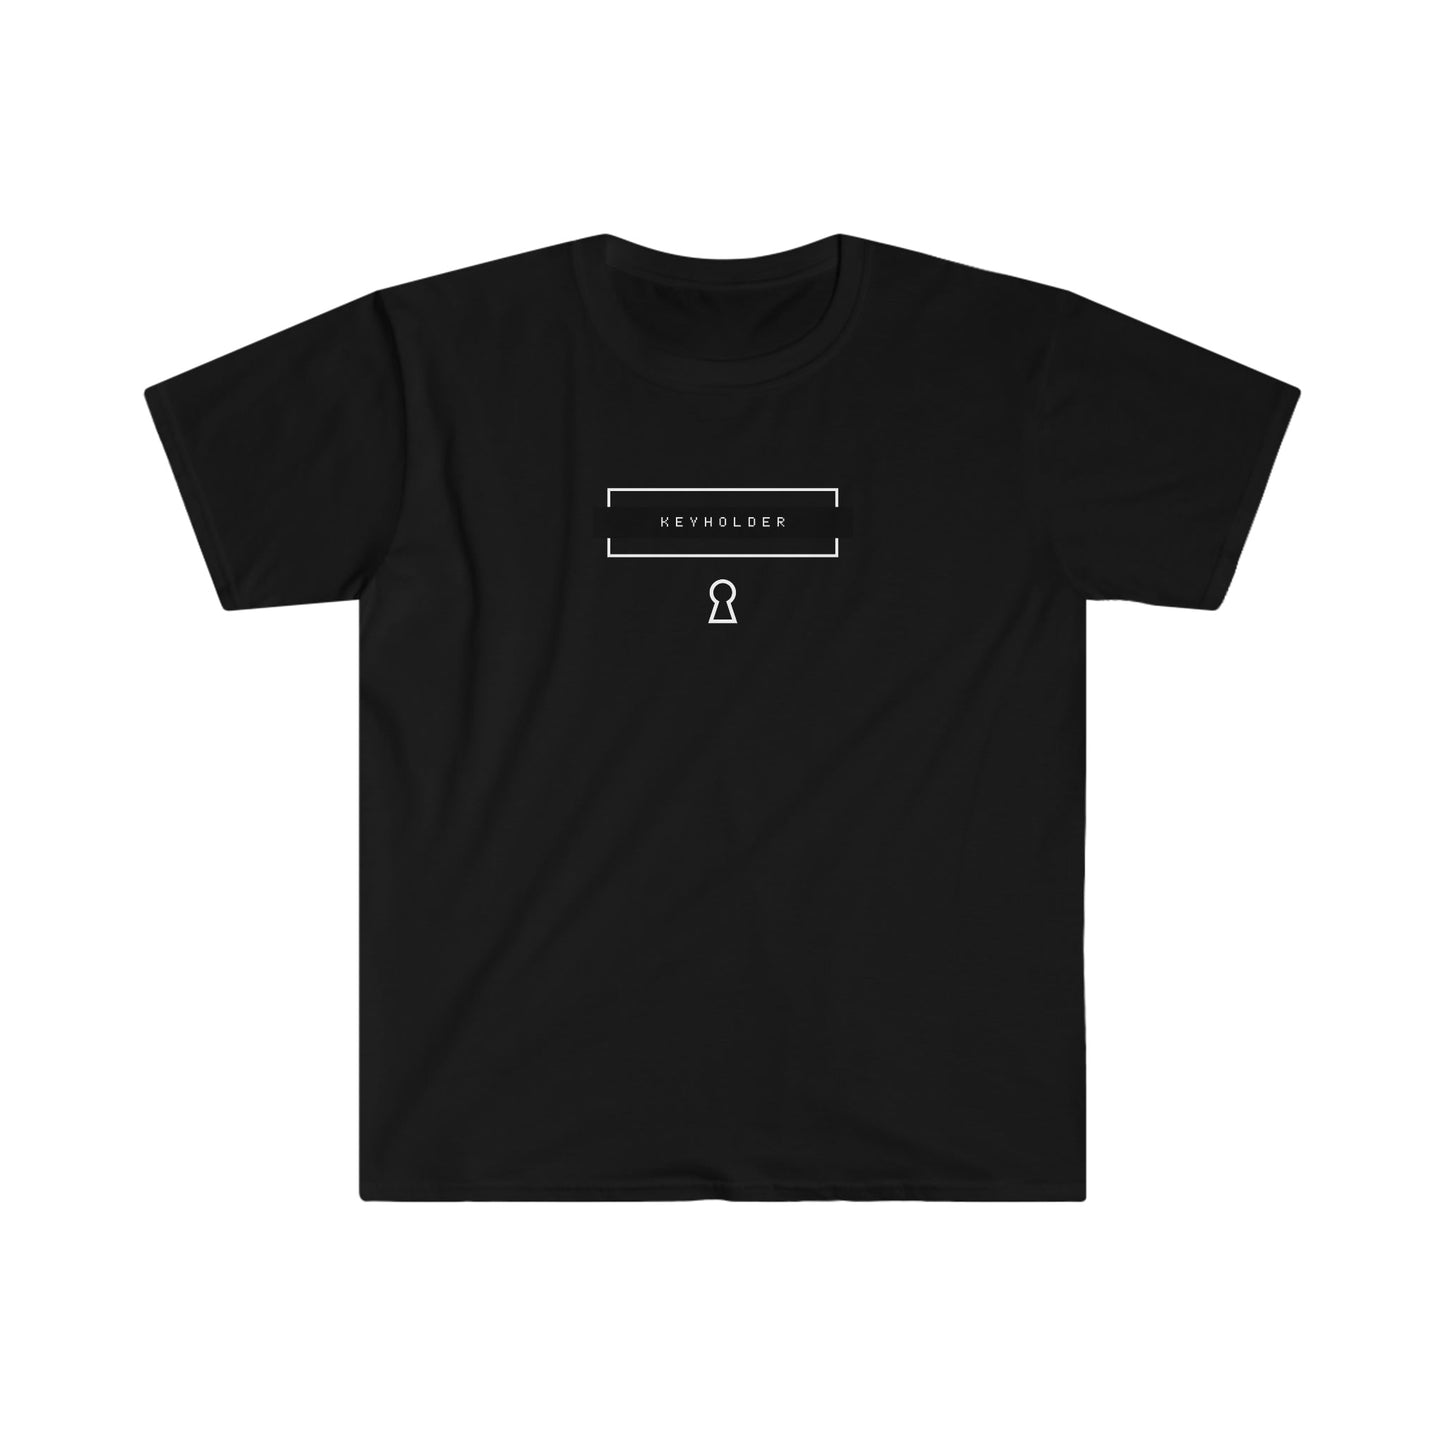 T-Shirt Black / S KEYHOLDER  Player 1 - Chastity Shirts by LockedBoy Athletics LEATHERDADDY BATOR